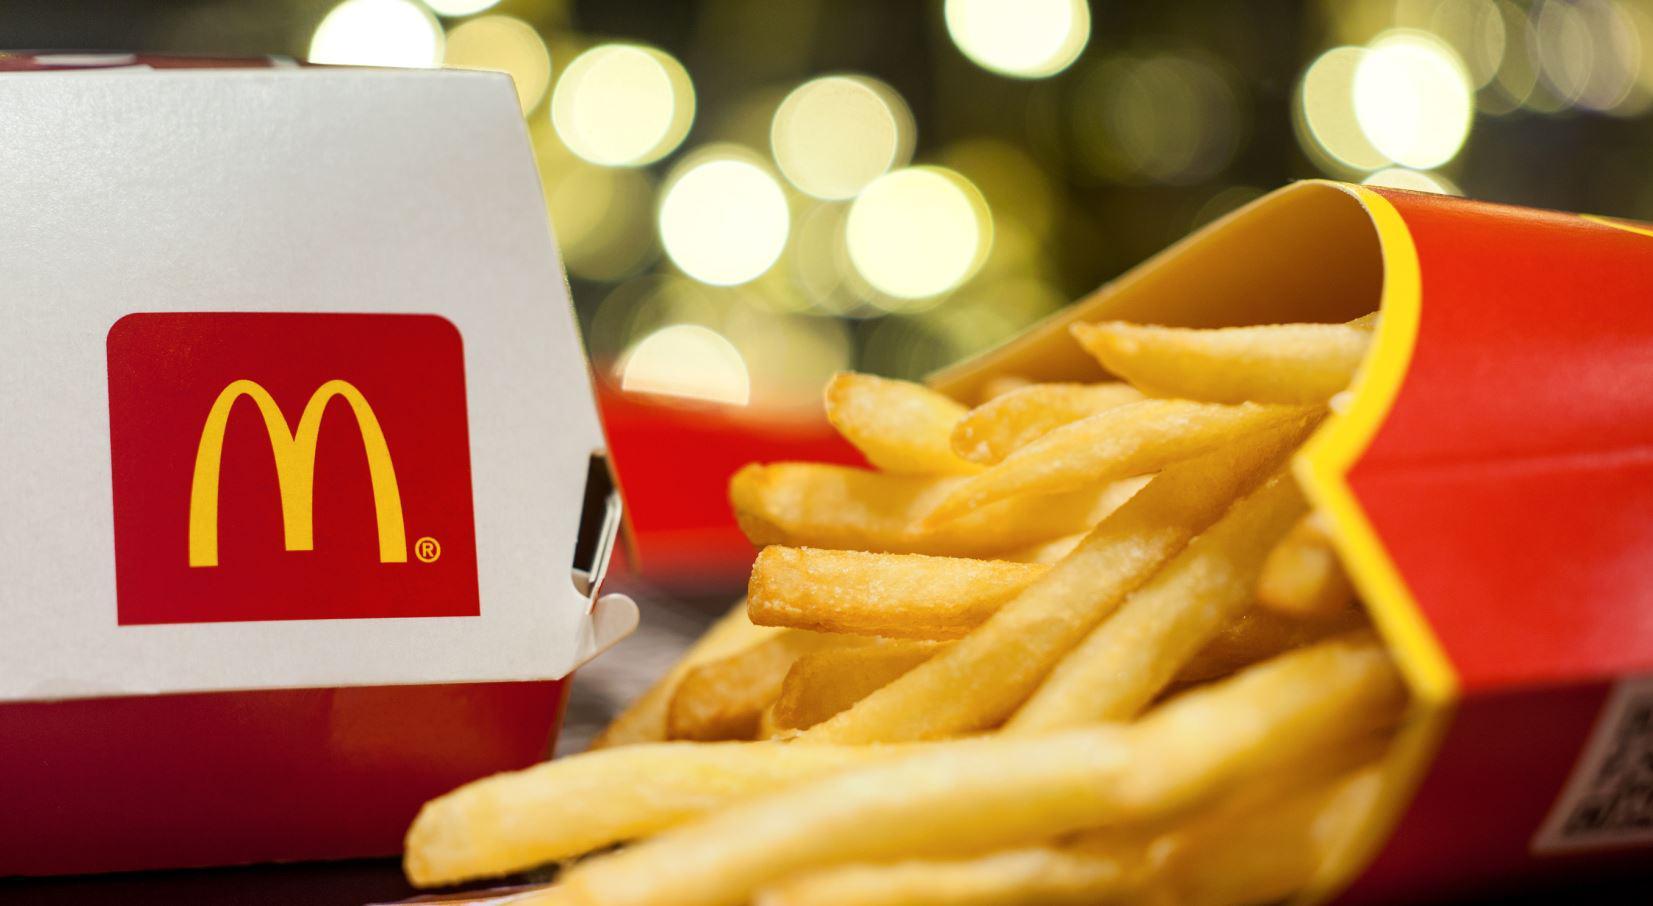 A McDonald’s osztalékot és újabb bírságot jelentett be 